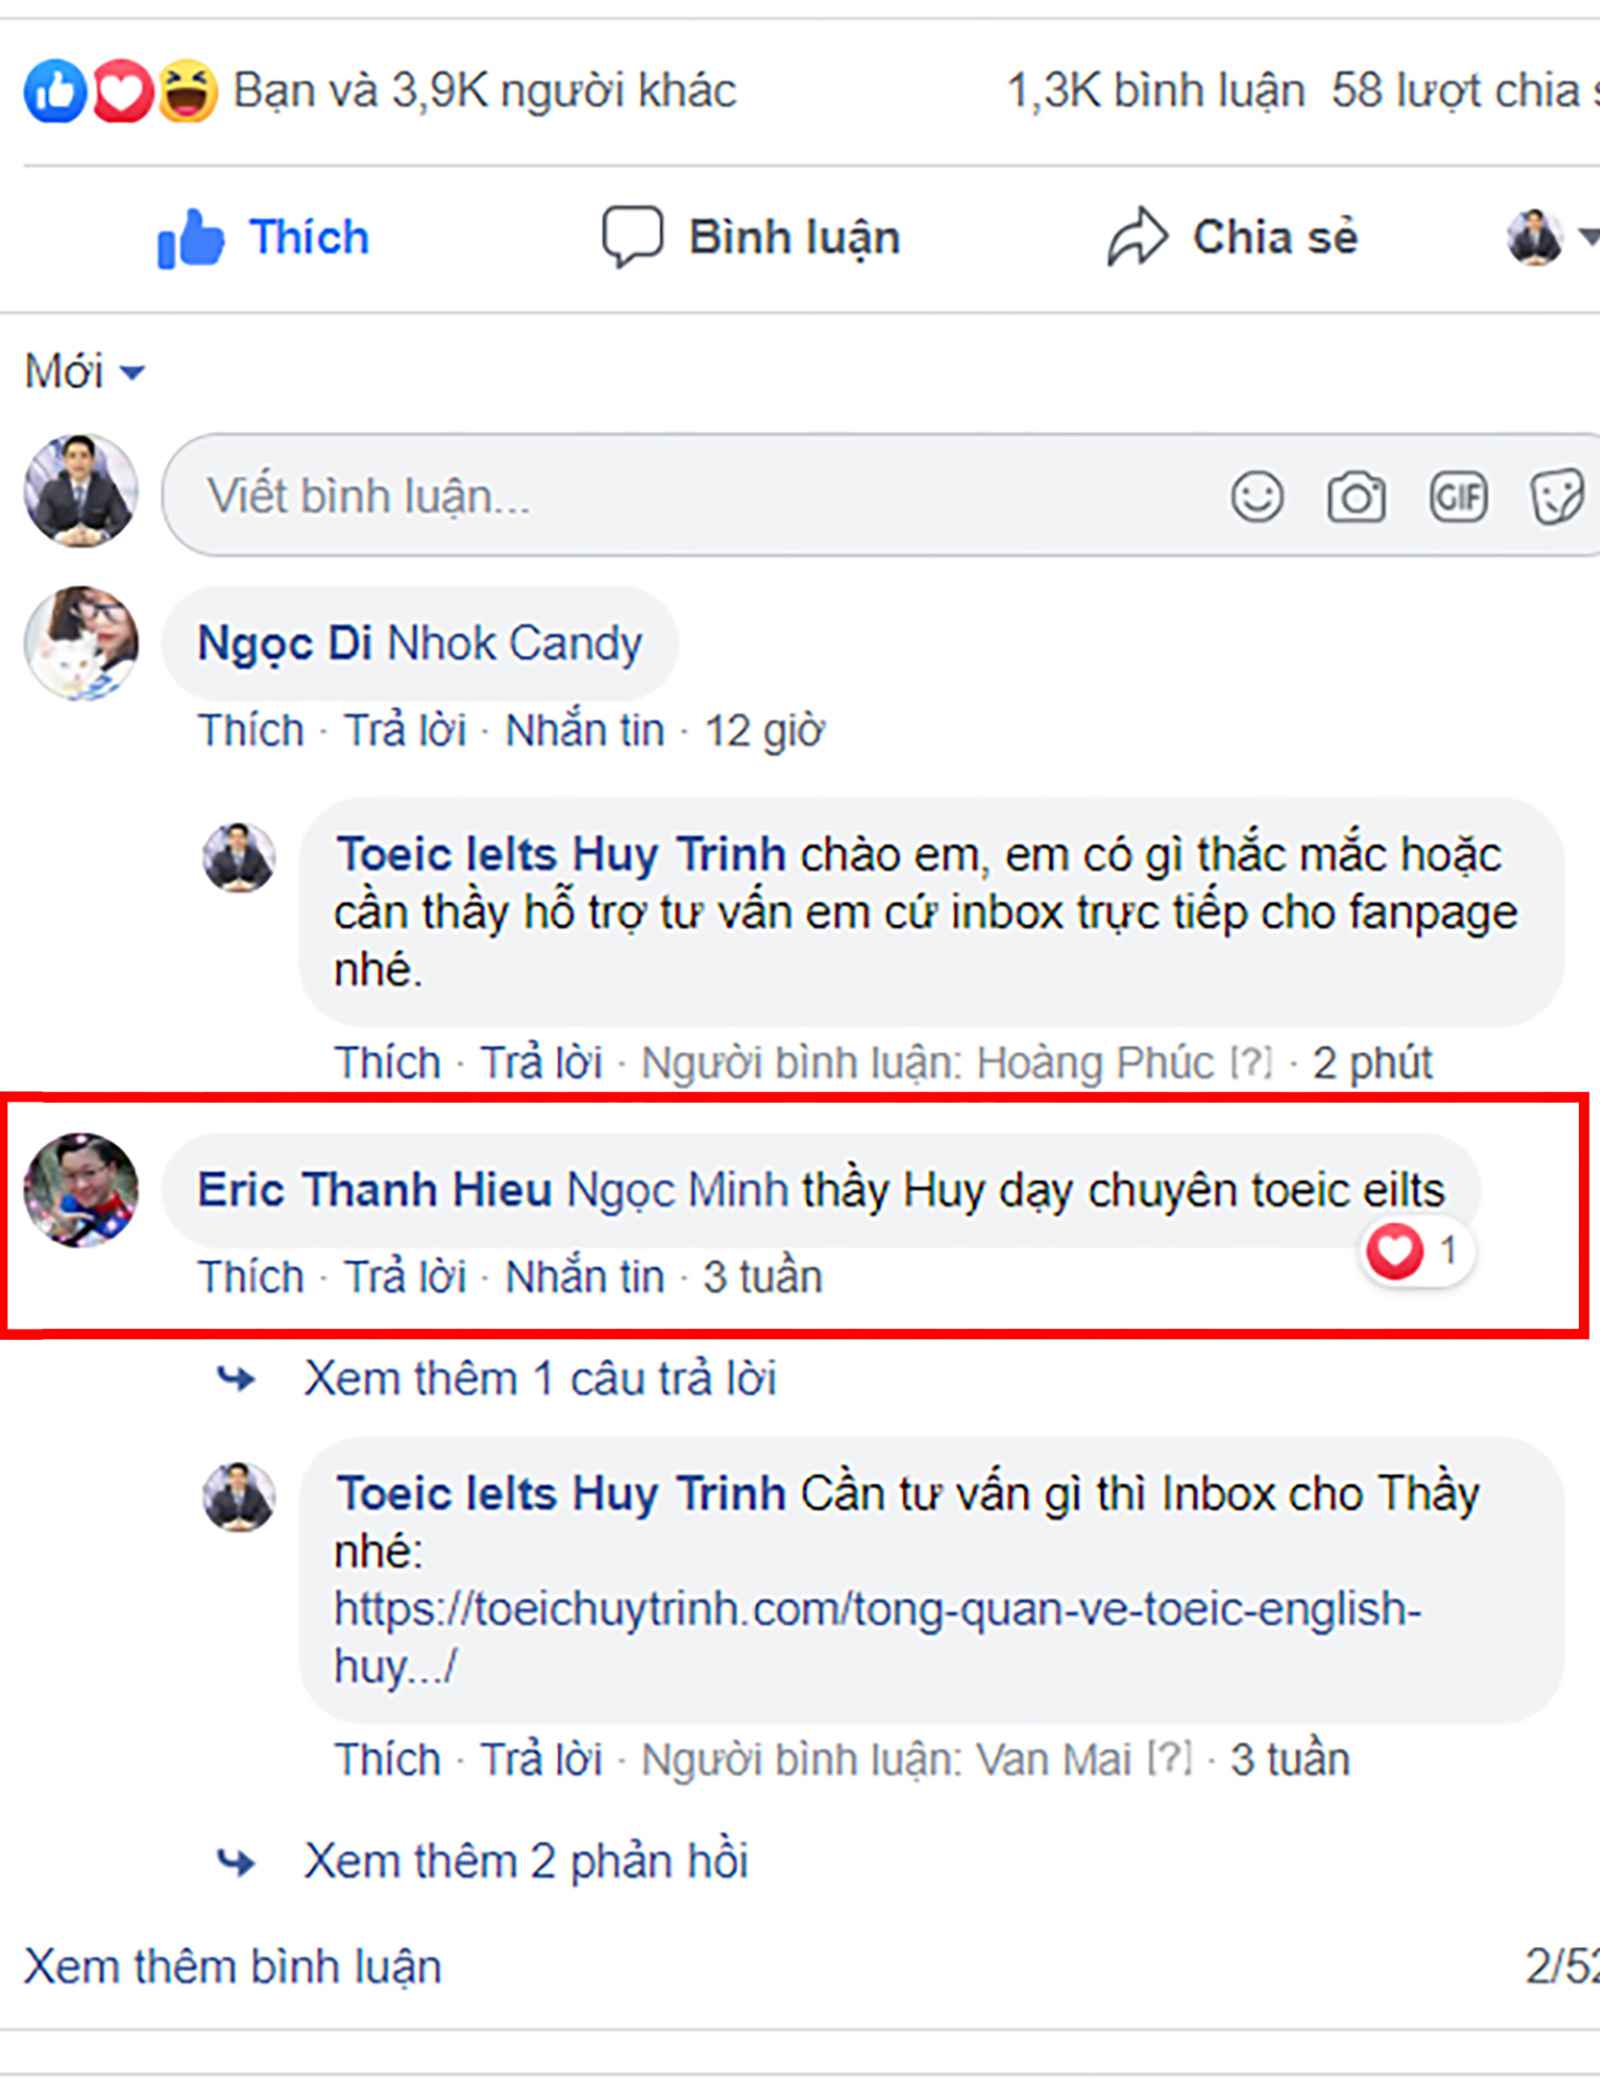 12 07 1 1 - Các Học Viên Nhiệt Tình Giới Thiệu Anh Ngữ Huy Trịnh Cho Bạn Bè